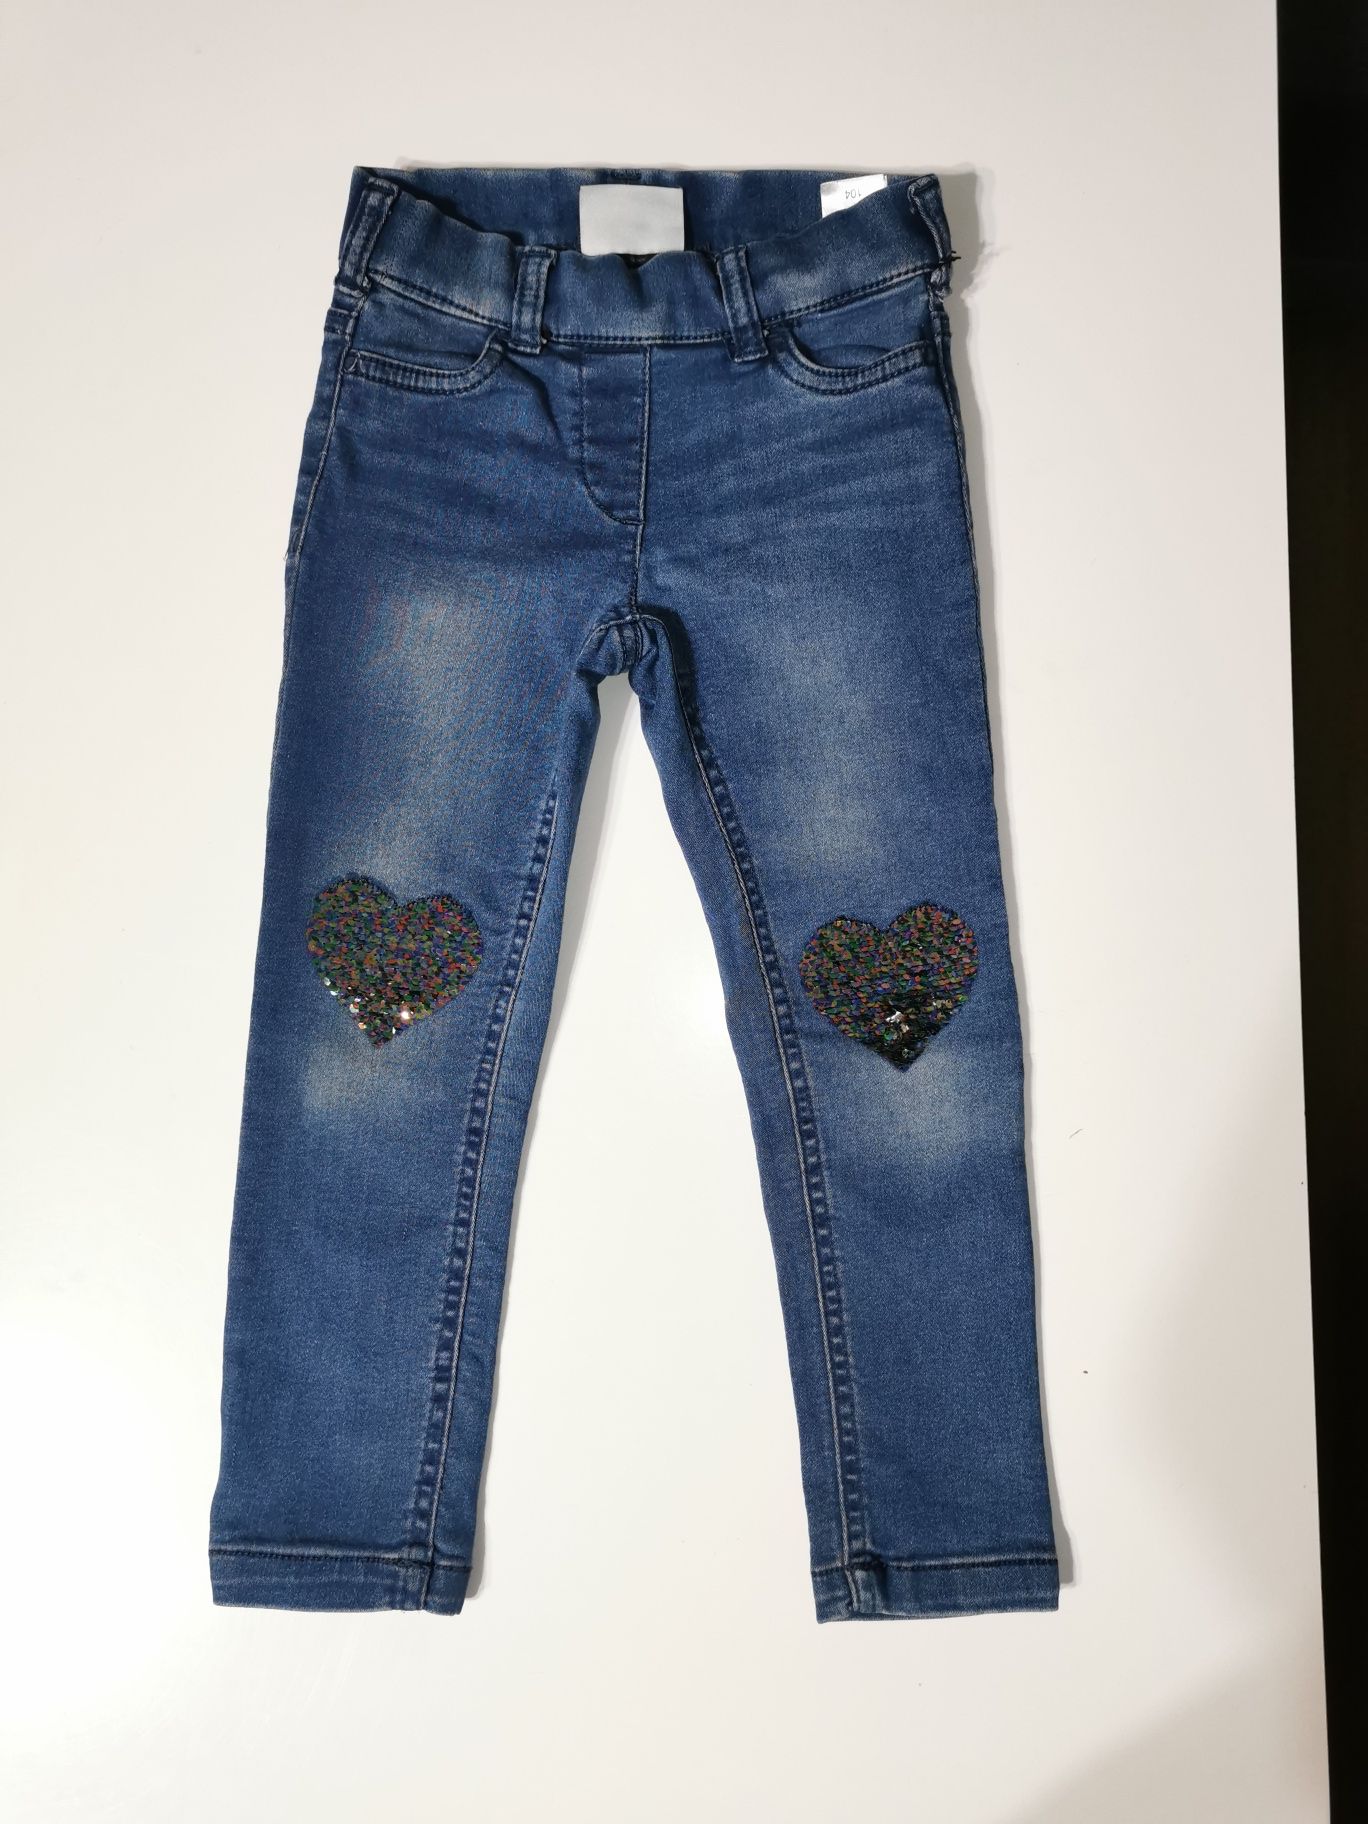 Jegging jeans C&a z serduszkami, jegginsy, jeansy r. 104